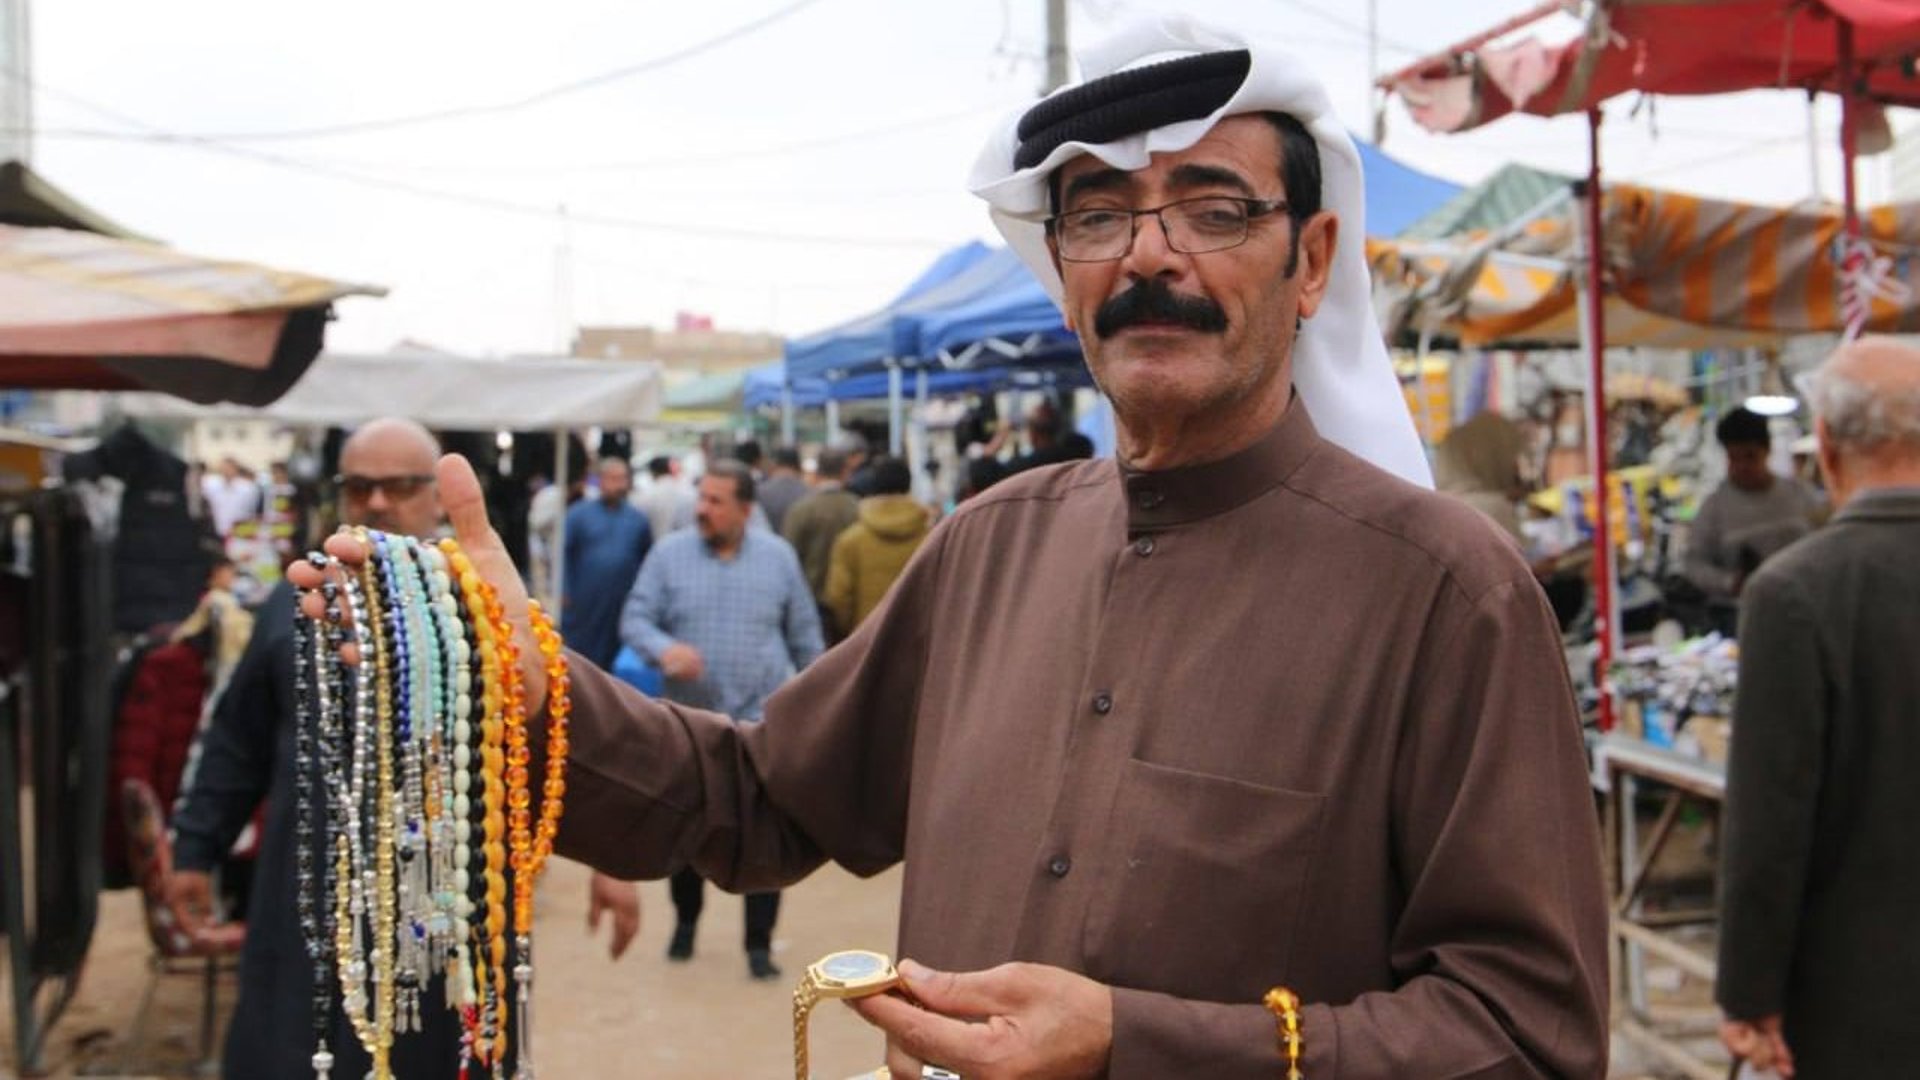 أبو عباس بائع السبح المتجول في سوق العشار يخبرنا عن محتويات حقيبته (صور)